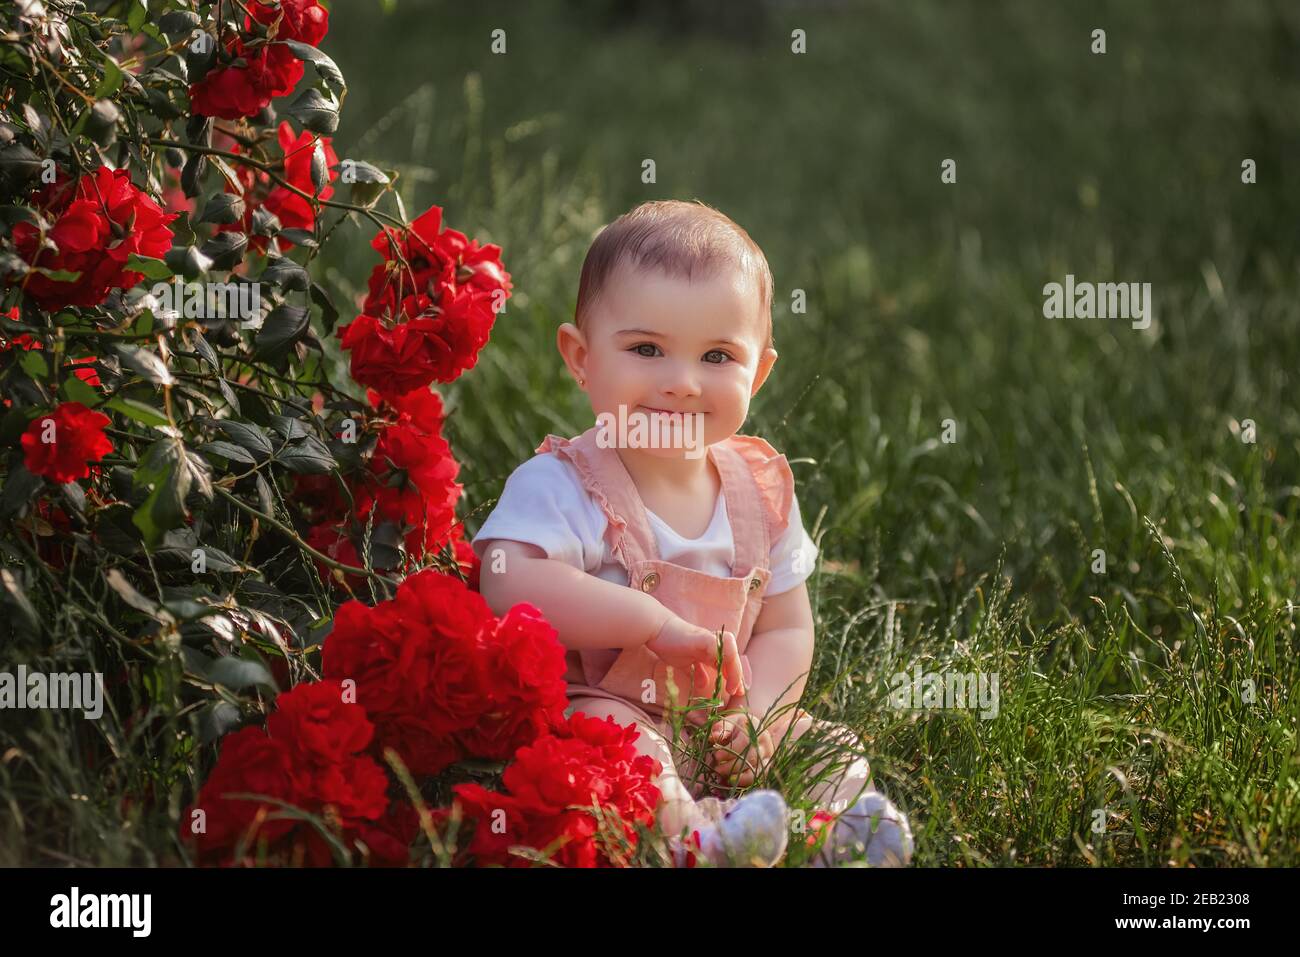 Un bambino si siede su un prato verde accanto alle rose rosse. Una ragazza felice in una tuta polverosa gode di una passeggiata nel parco, le aggrappano le mani, il sole è timido Foto Stock